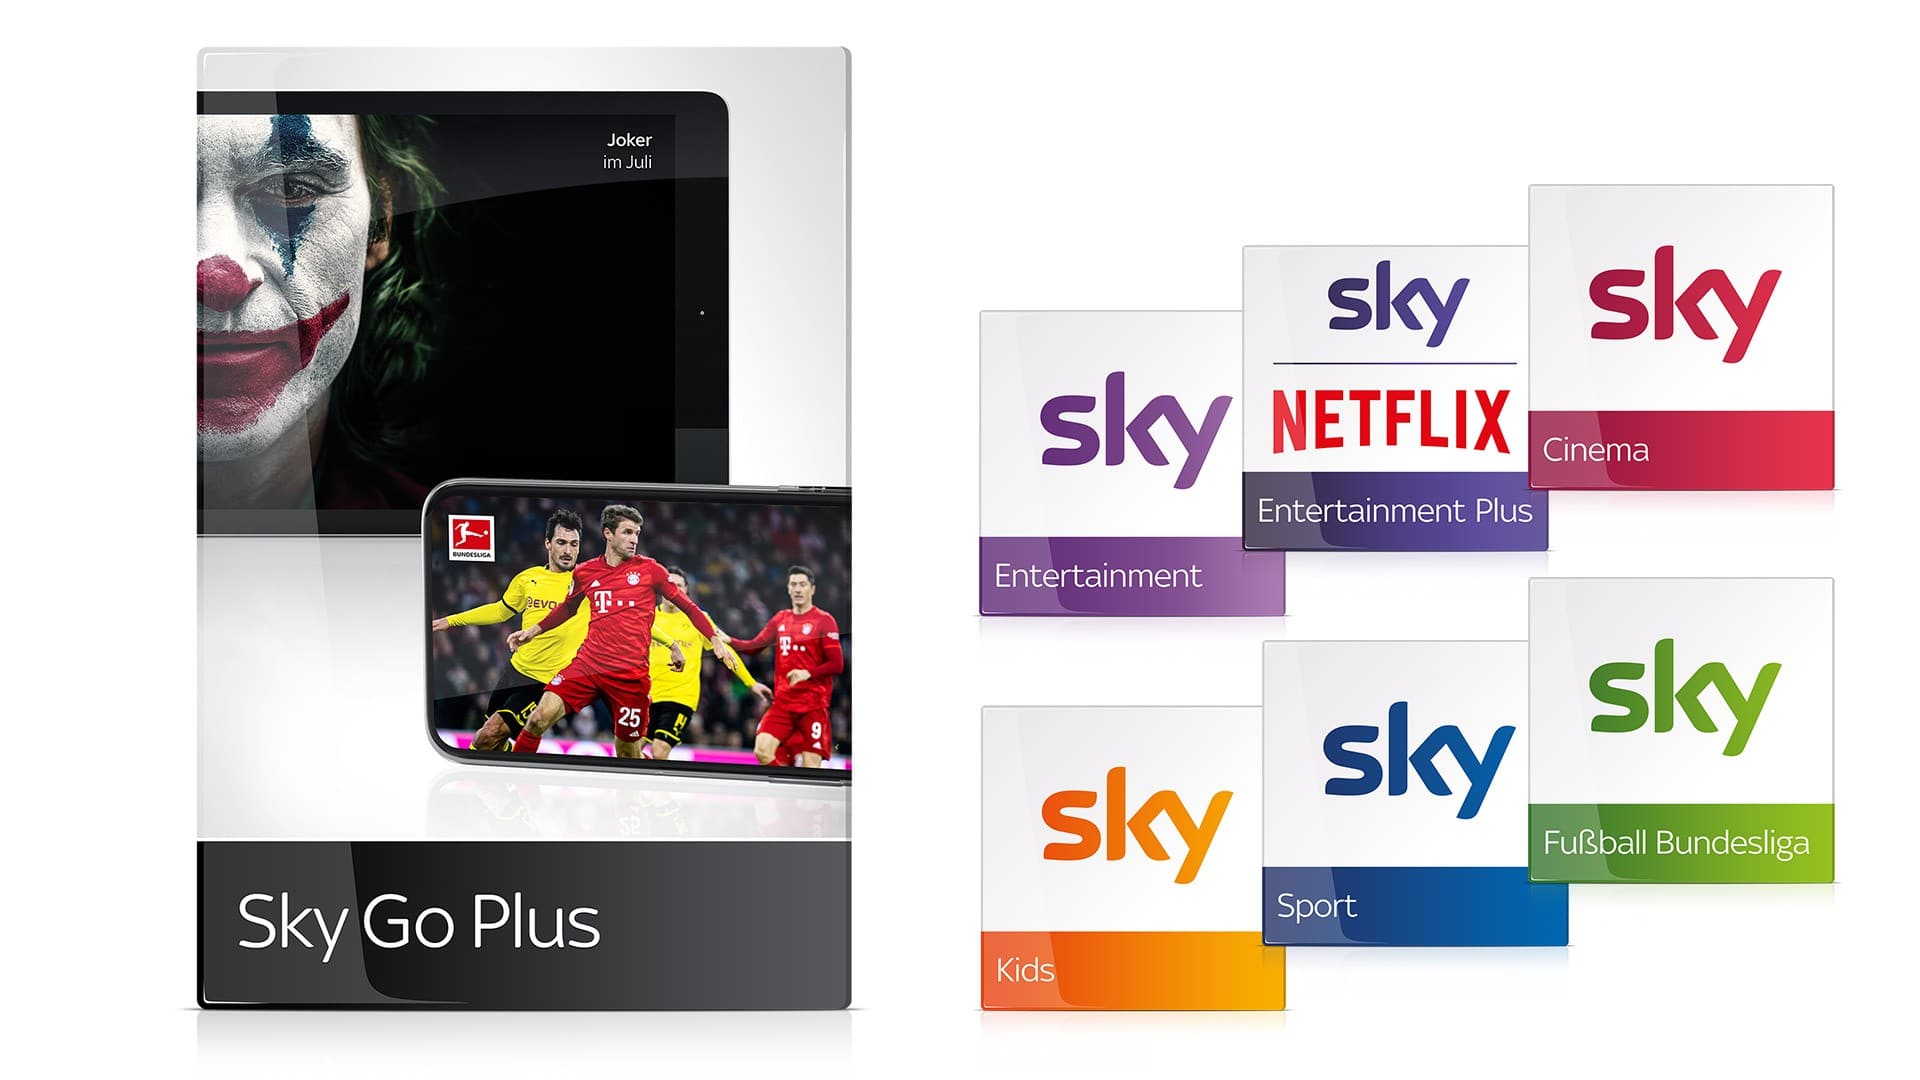 Sky Komplett Abo inkl HD Netflix Sky Q Receiver nur € 39,99 mtl statt € 79,99 